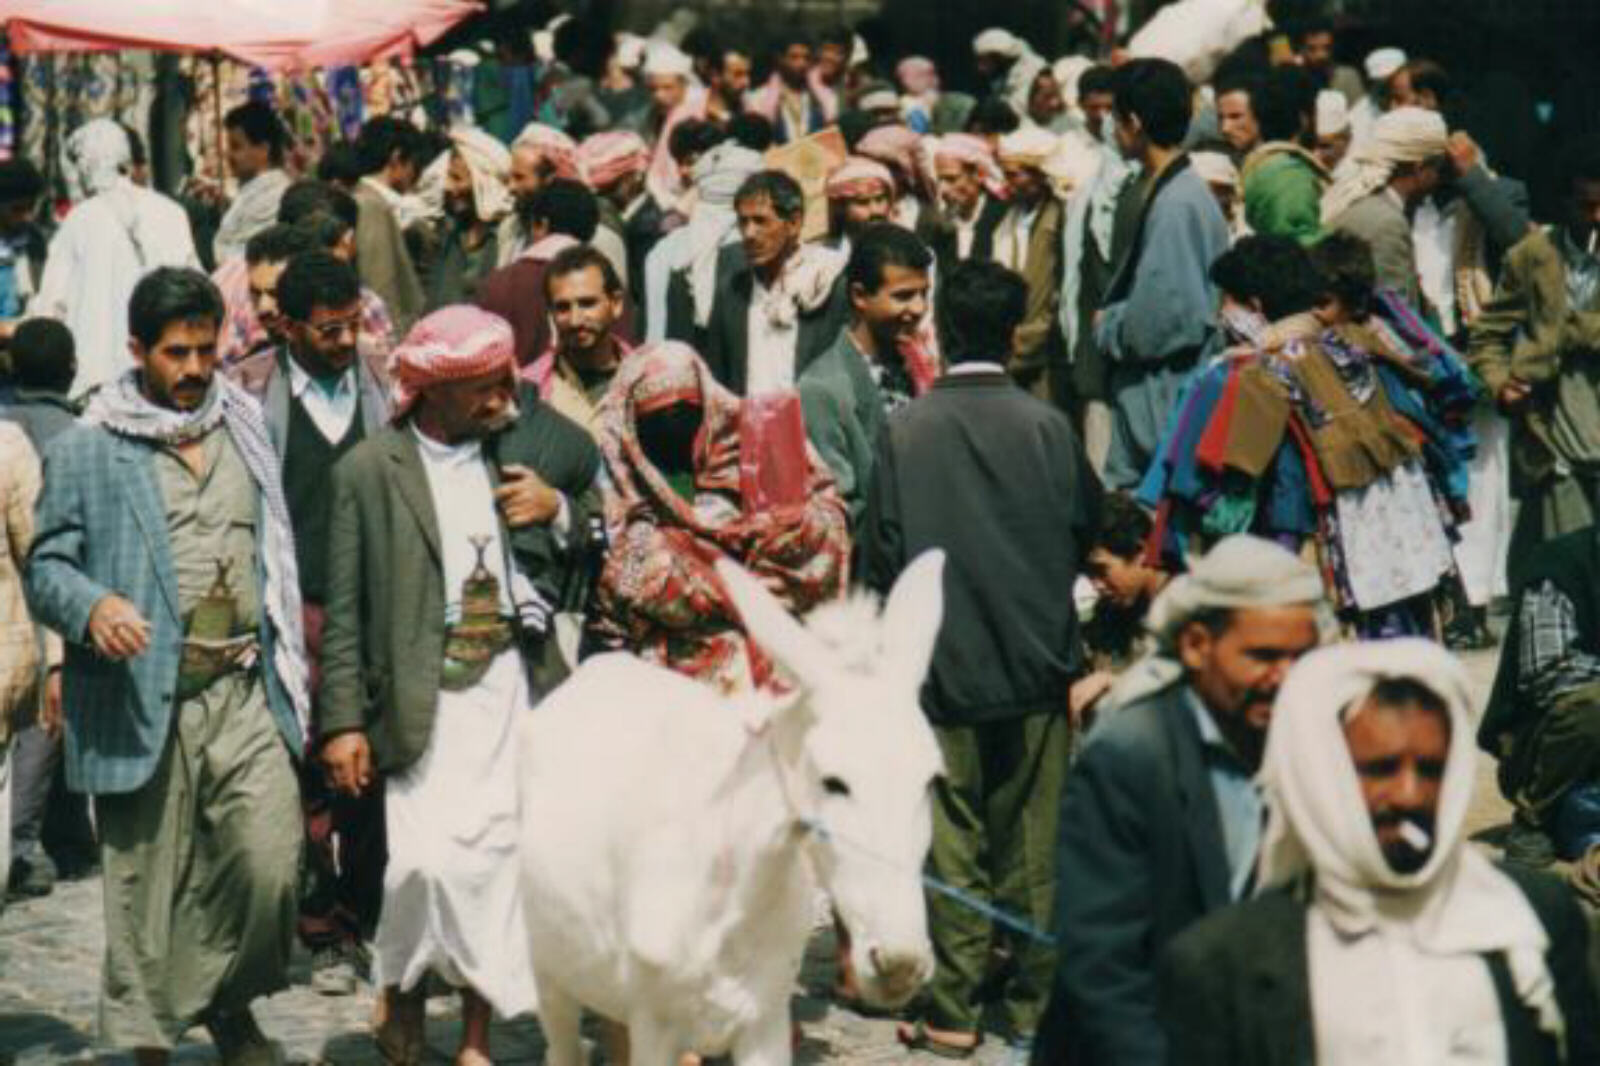 The souk outside Bab Al-Yaman gate, Sanaa, Yemen